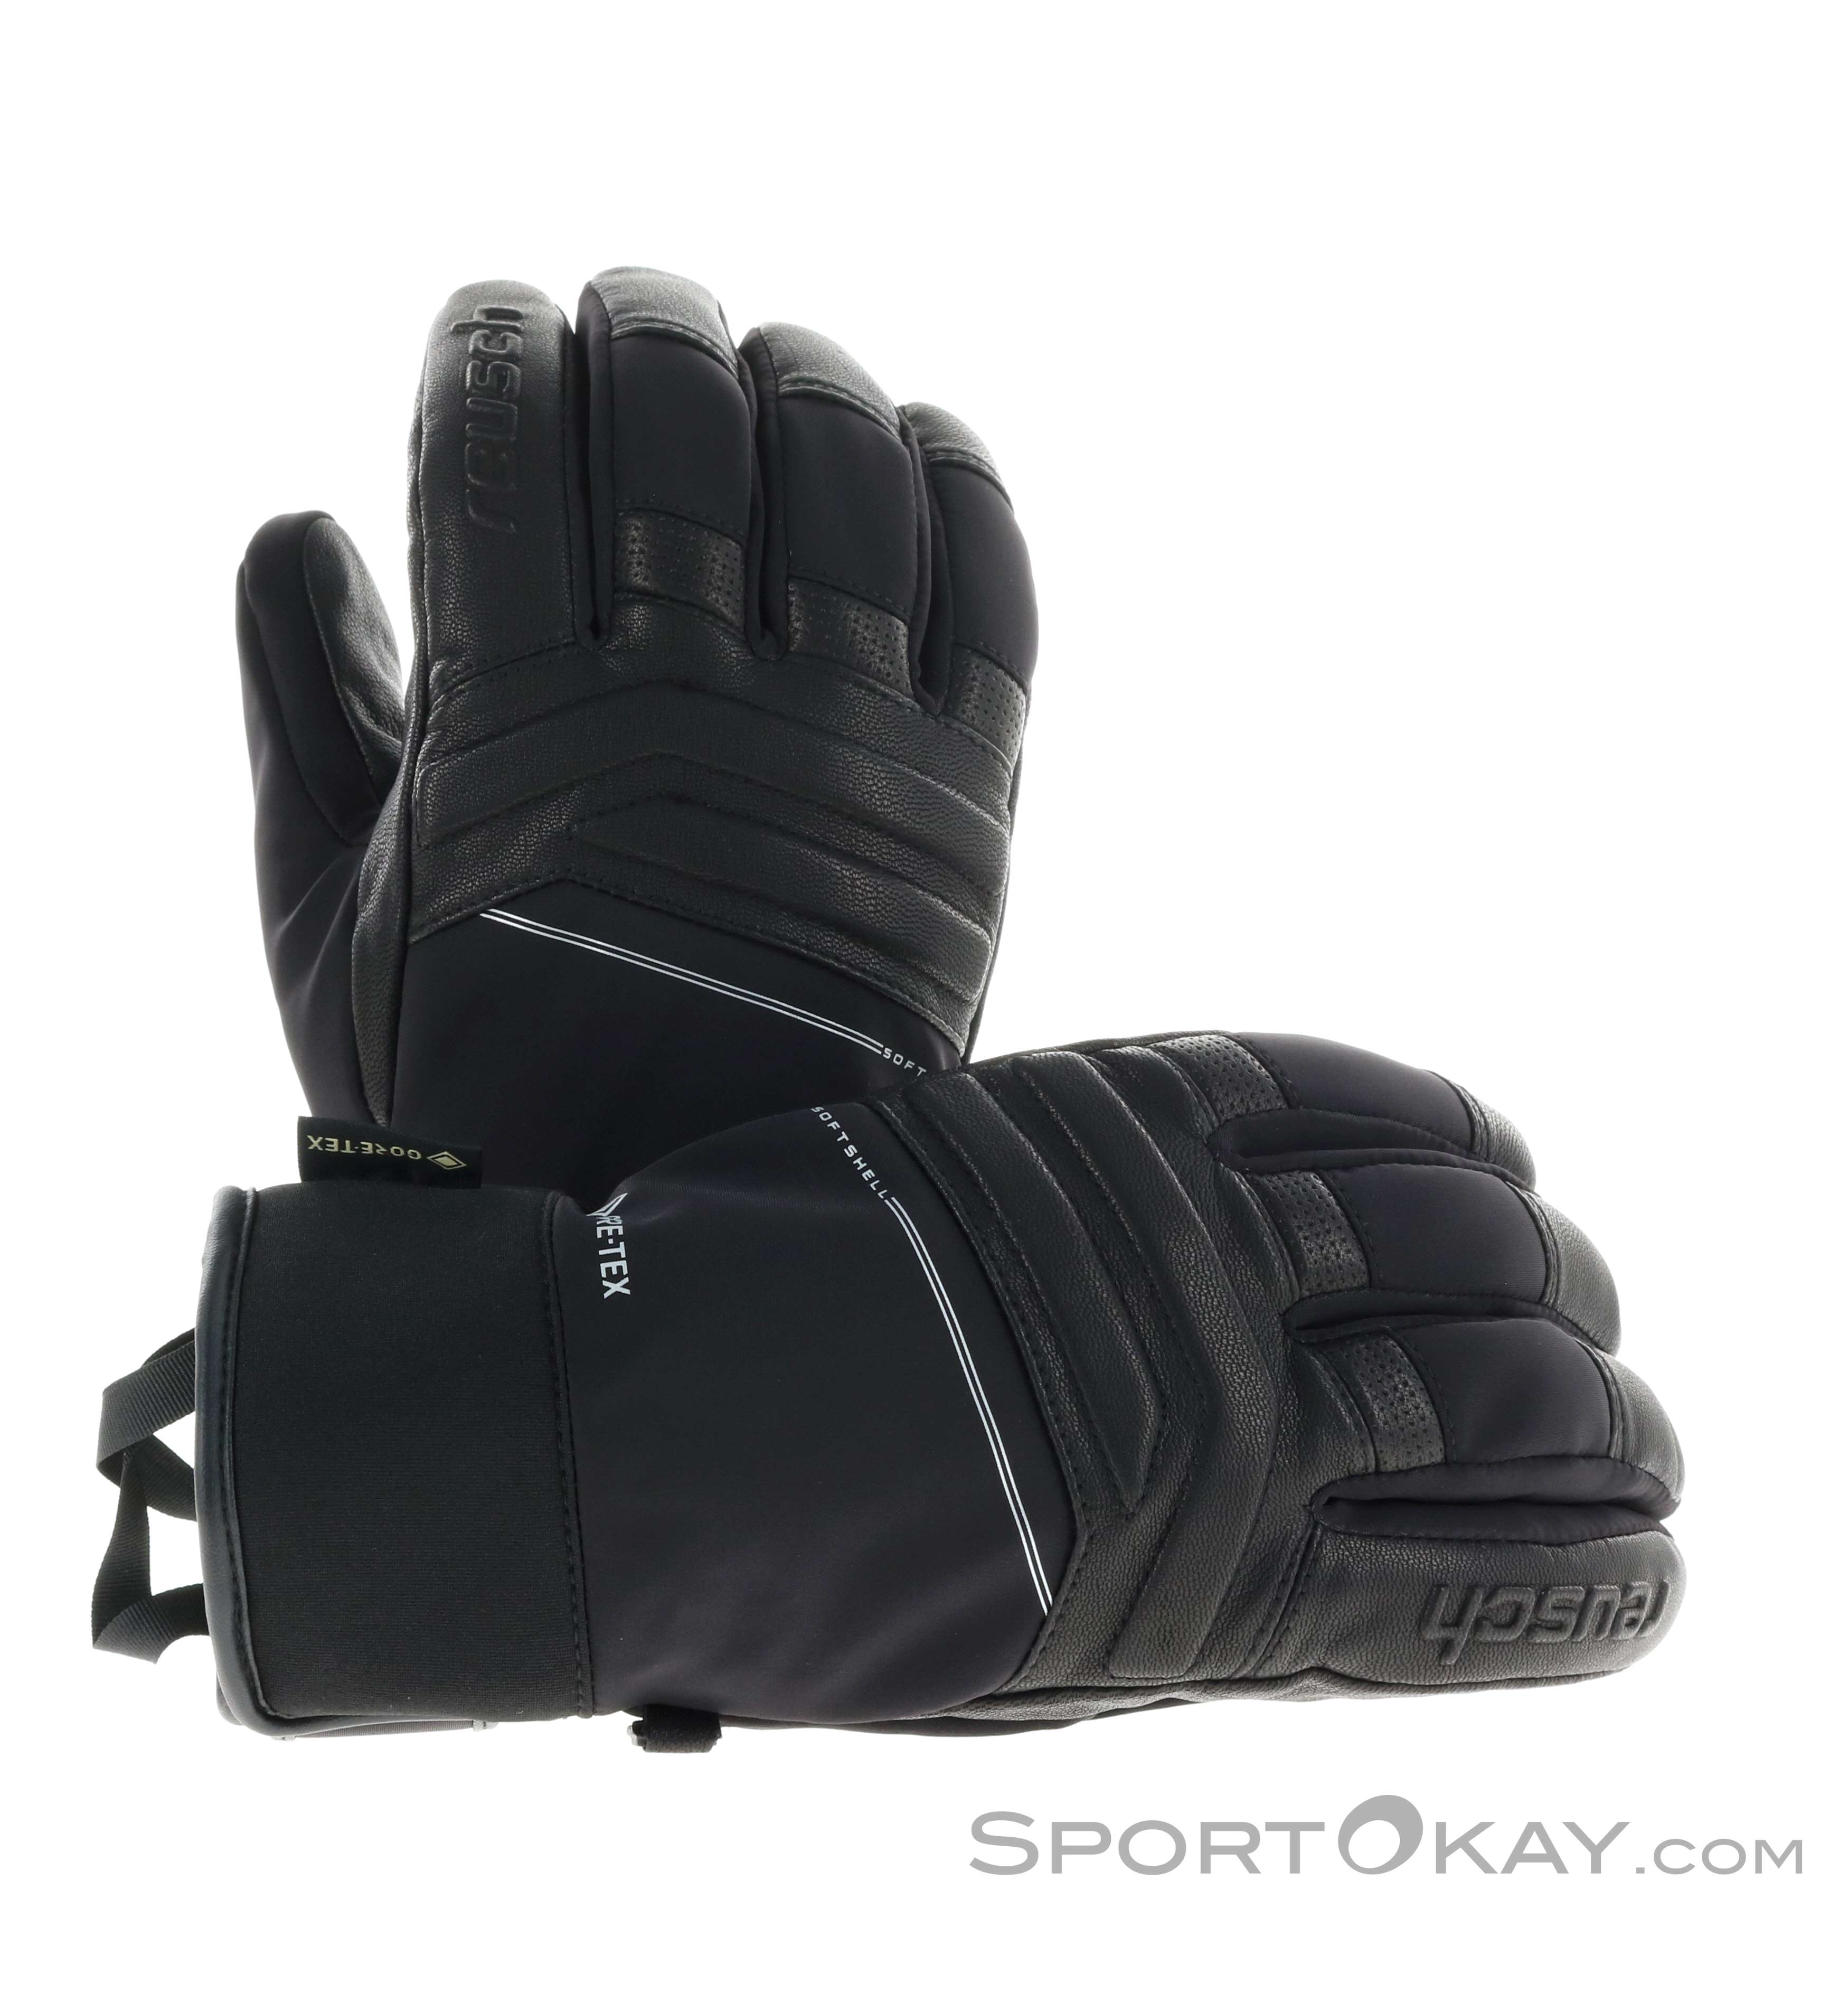 Reusch Jupiter GTX Handschuhe Gore-Tex - Handschuhe - Outdoorbekleidung -  Outdoor - Alle